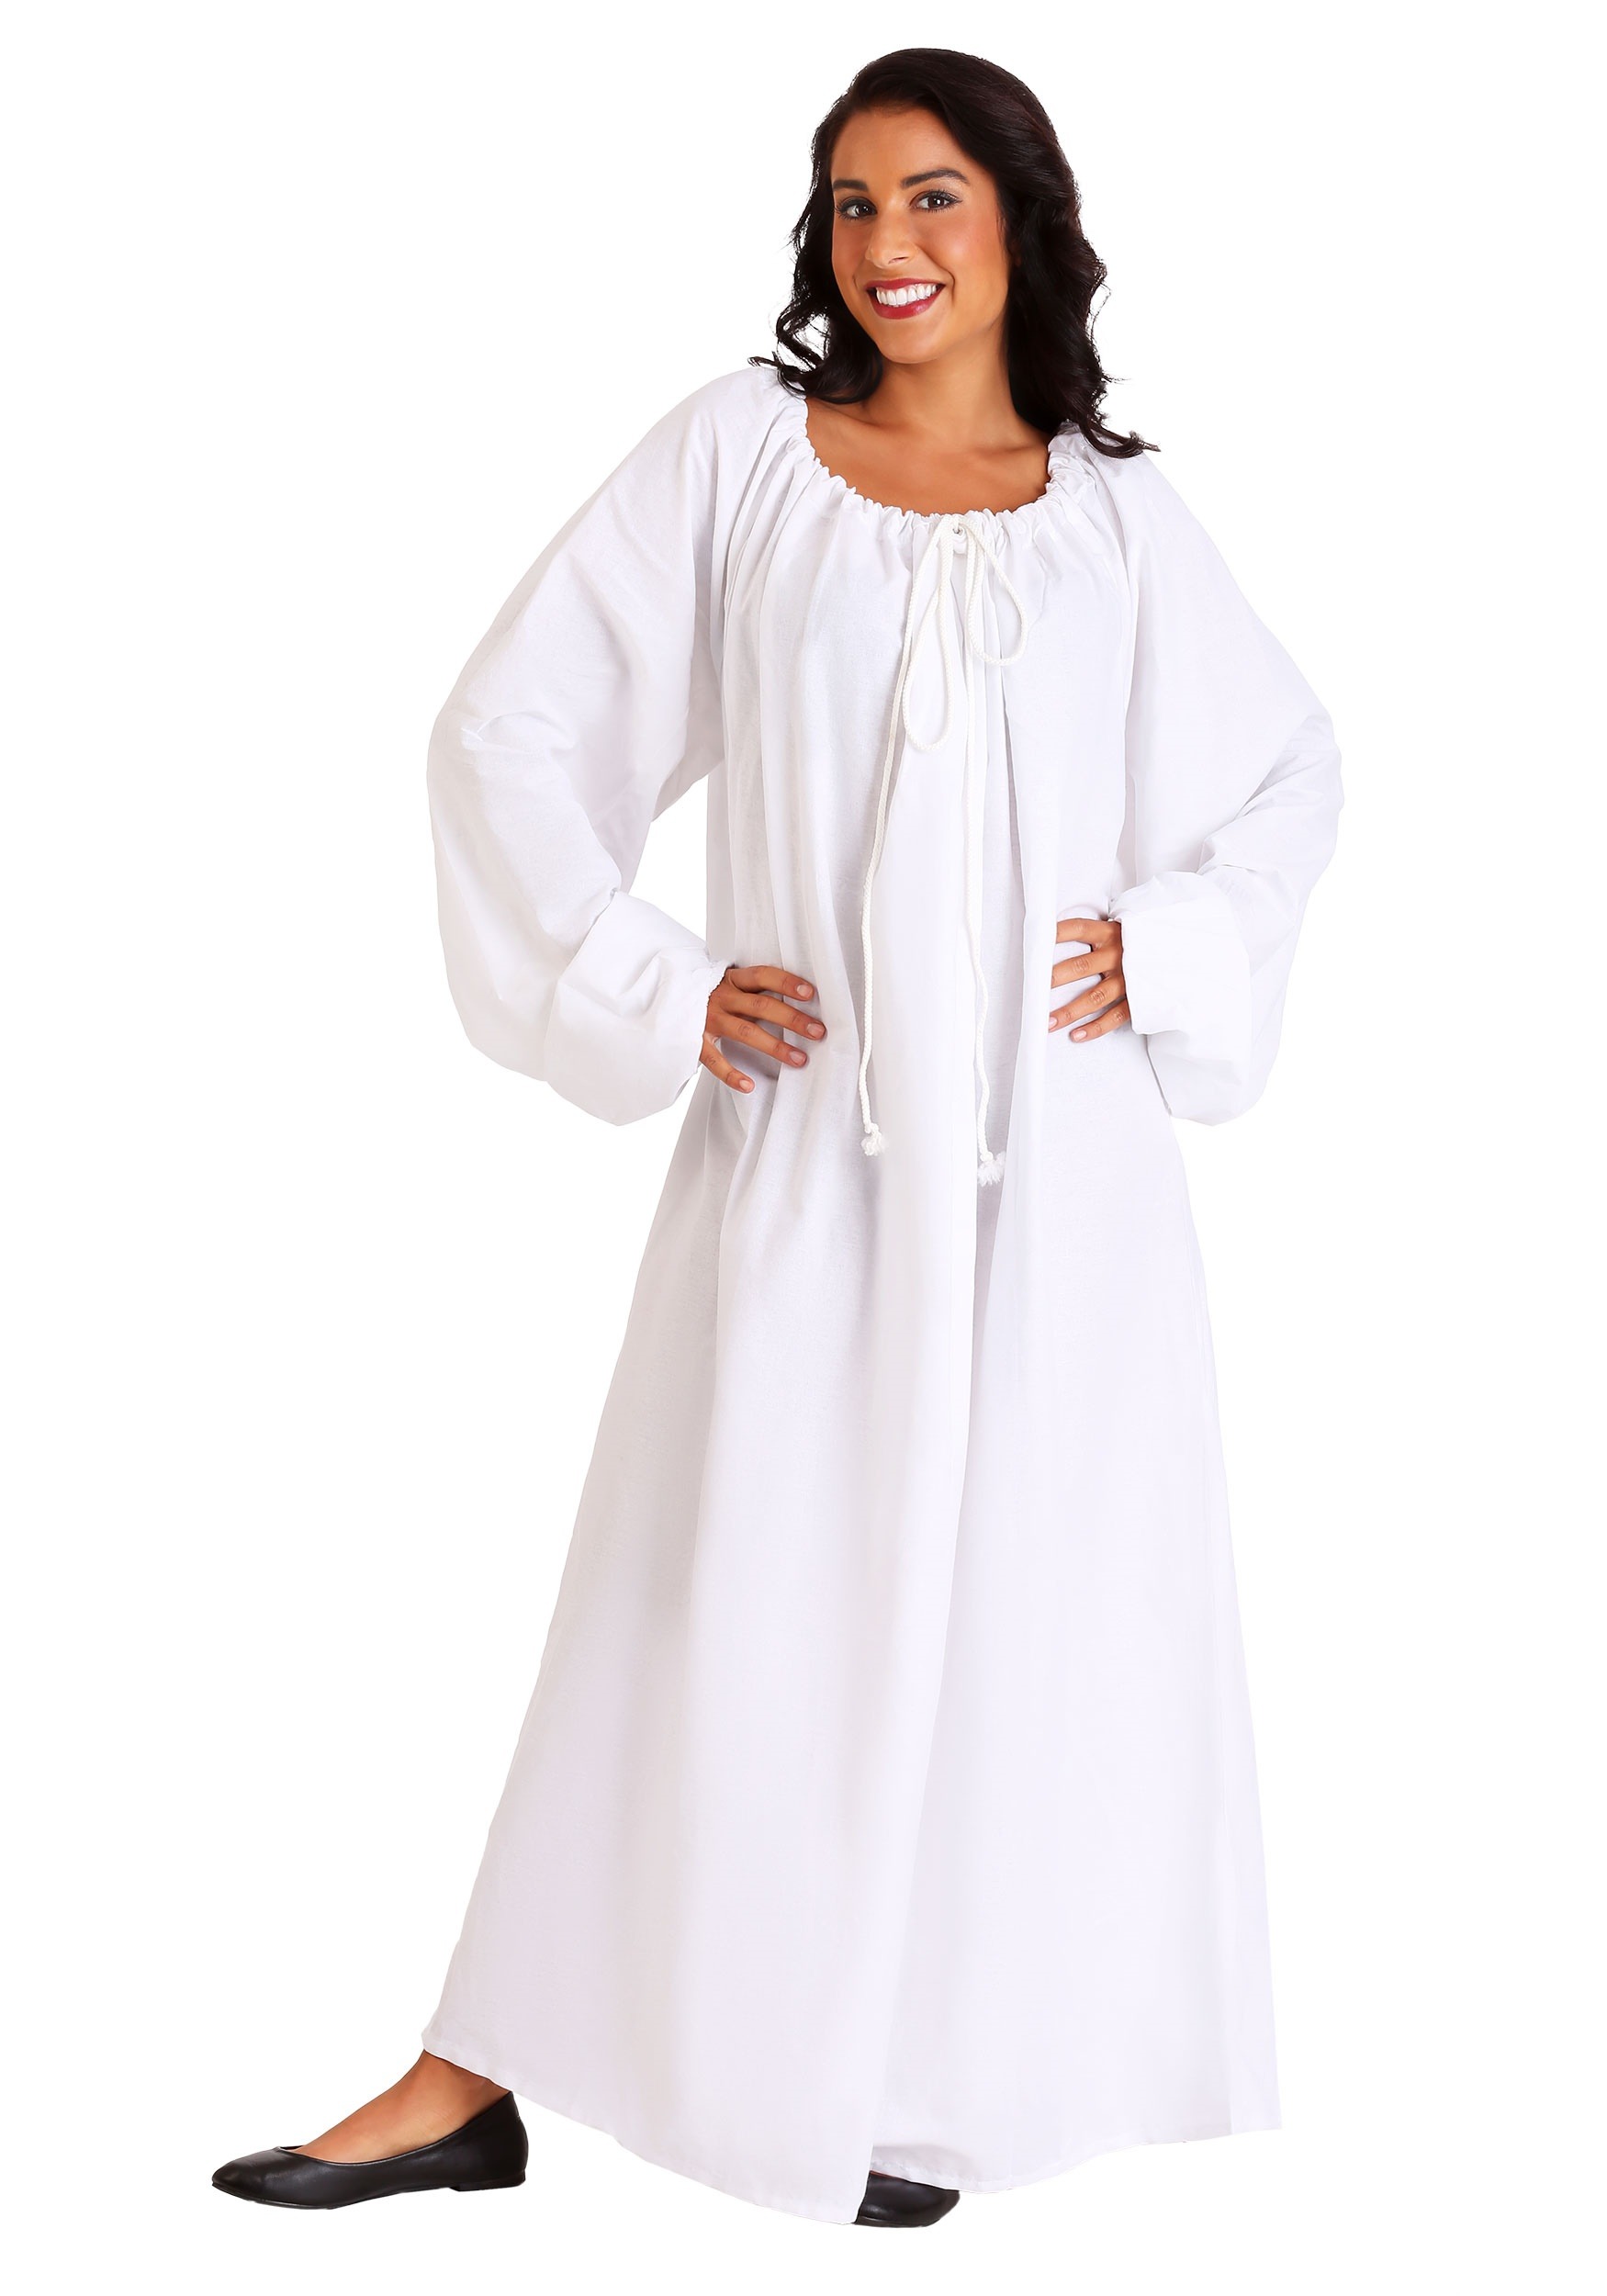 White Renaissance Chemise Costume for Women